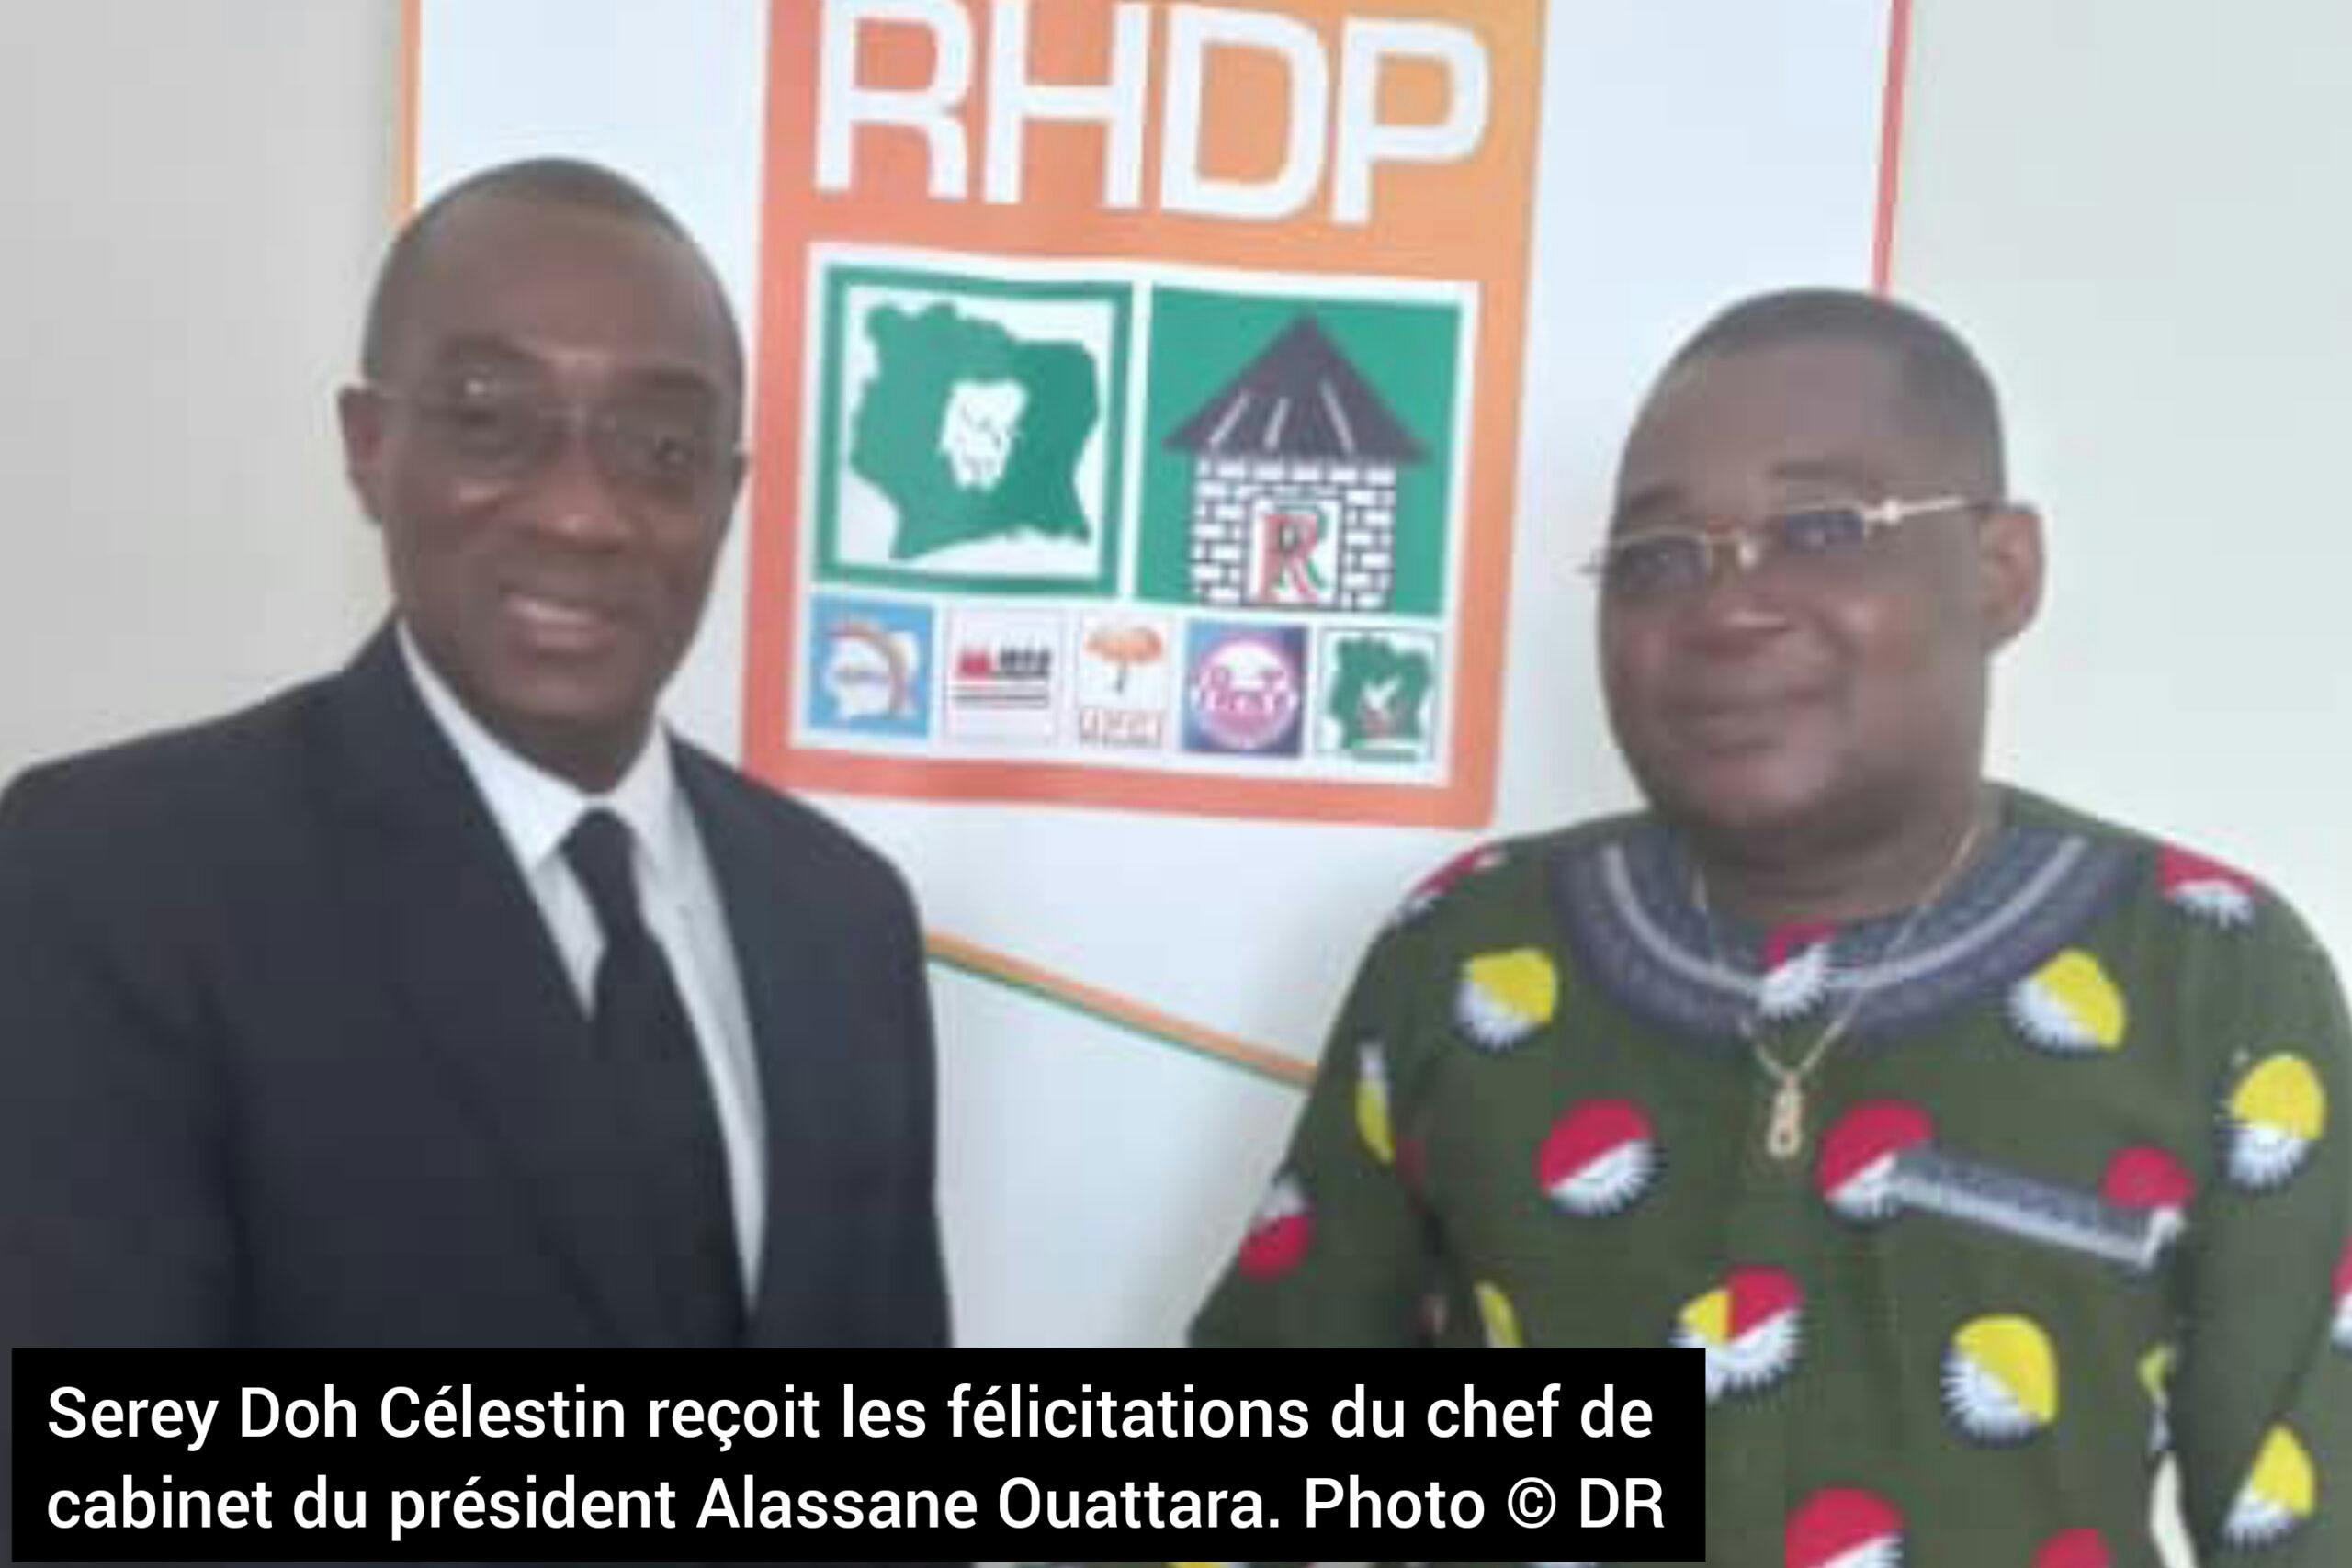 Côte d’Ivoire : Après son meeting à Bangolo, Serey Doh Célestin reçoit les félicitations Claude Sahi chef de cabinet du président Alassane Ouattara